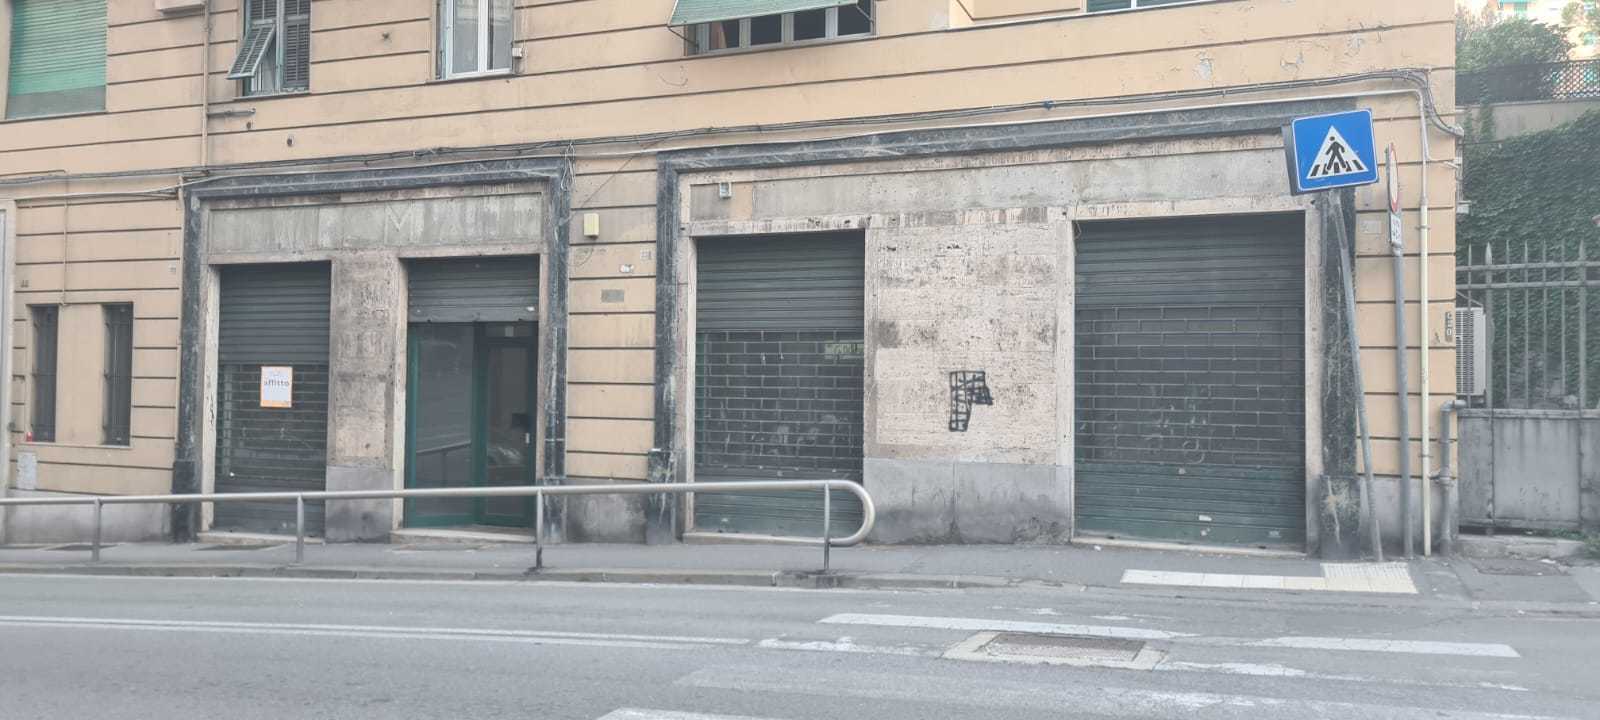 Locale commerciale in affitto in via giovanni torti 44, Genova